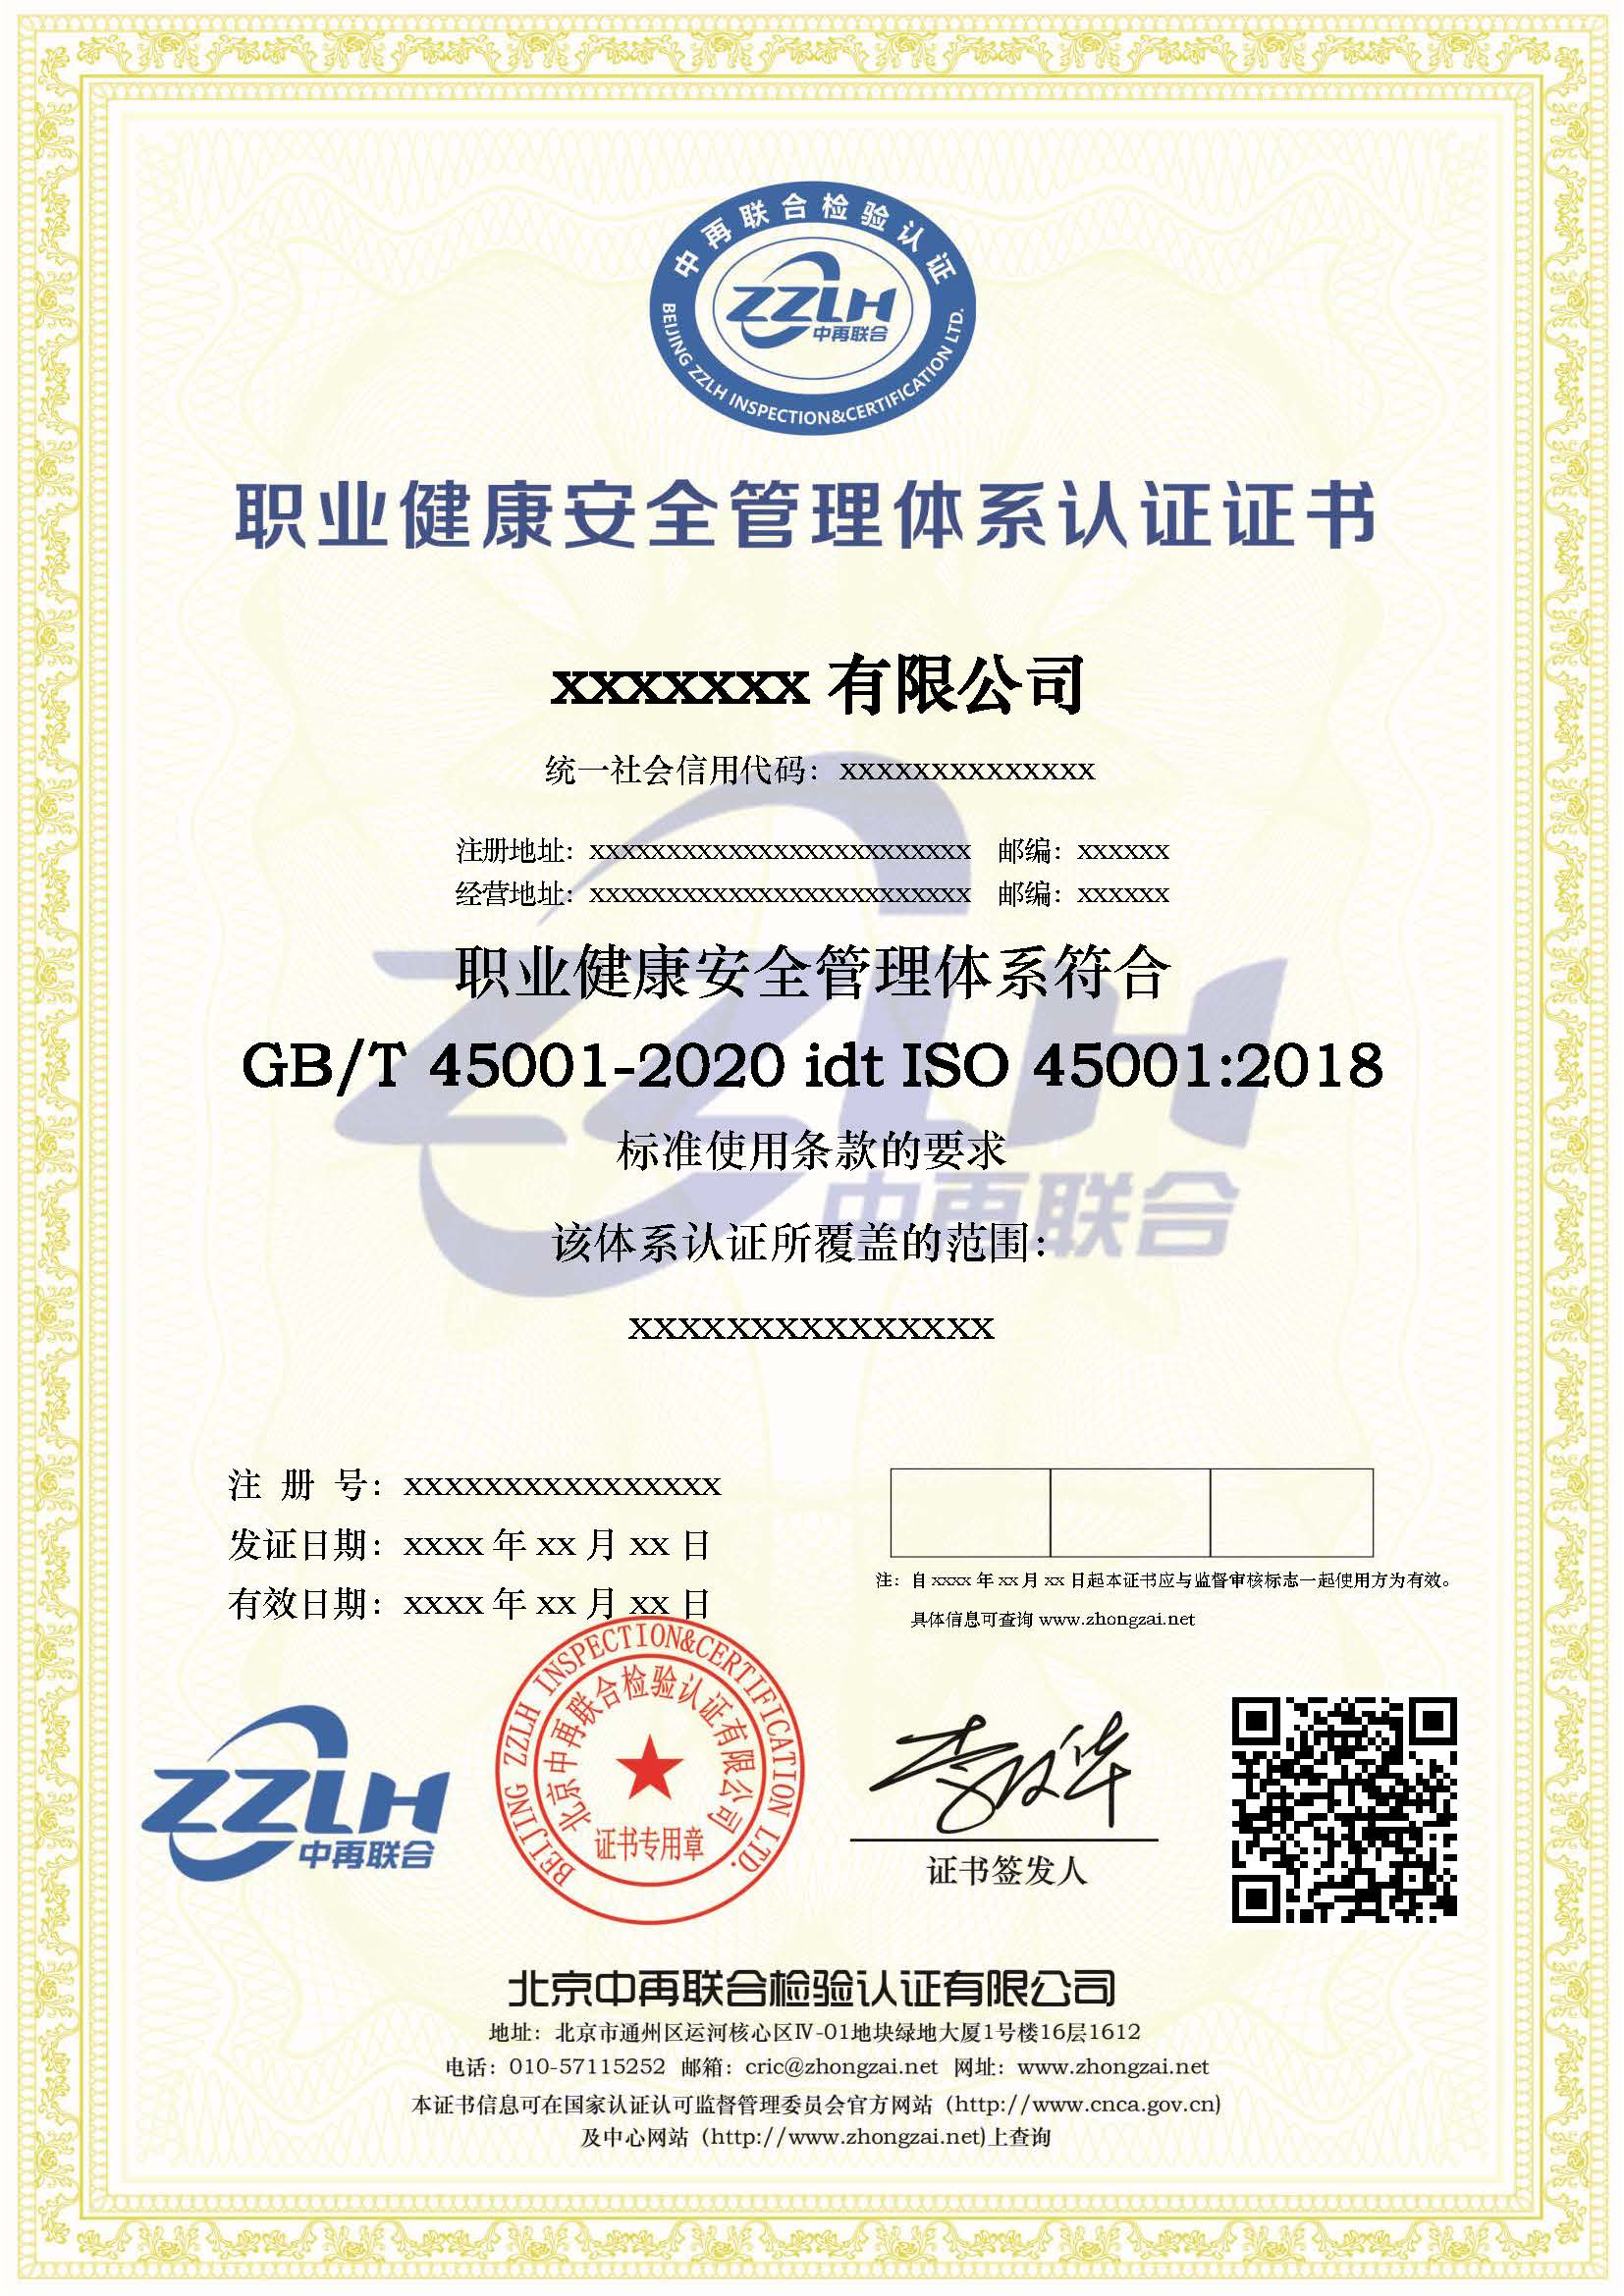 投标* 雅安加工企业ISO45001职业健康安全认证 ISO45001